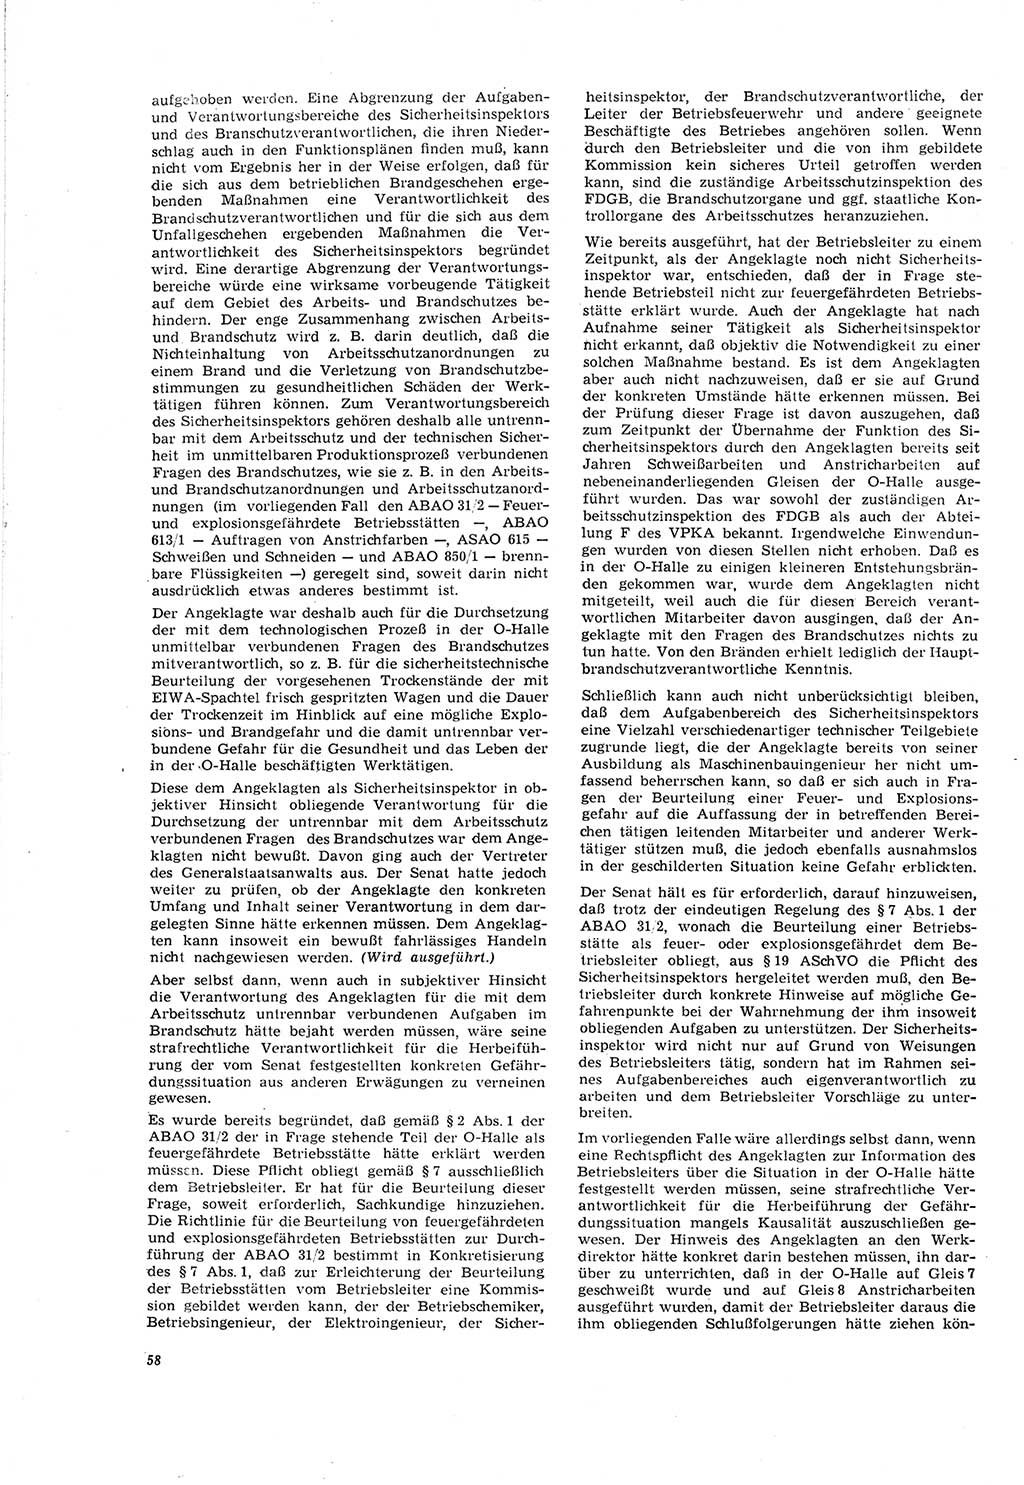 Neue Justiz (NJ), Zeitschrift für Recht und Rechtswissenschaft [Deutsche Demokratische Republik (DDR)], 20. Jahrgang 1966, Seite 58 (NJ DDR 1966, S. 58)